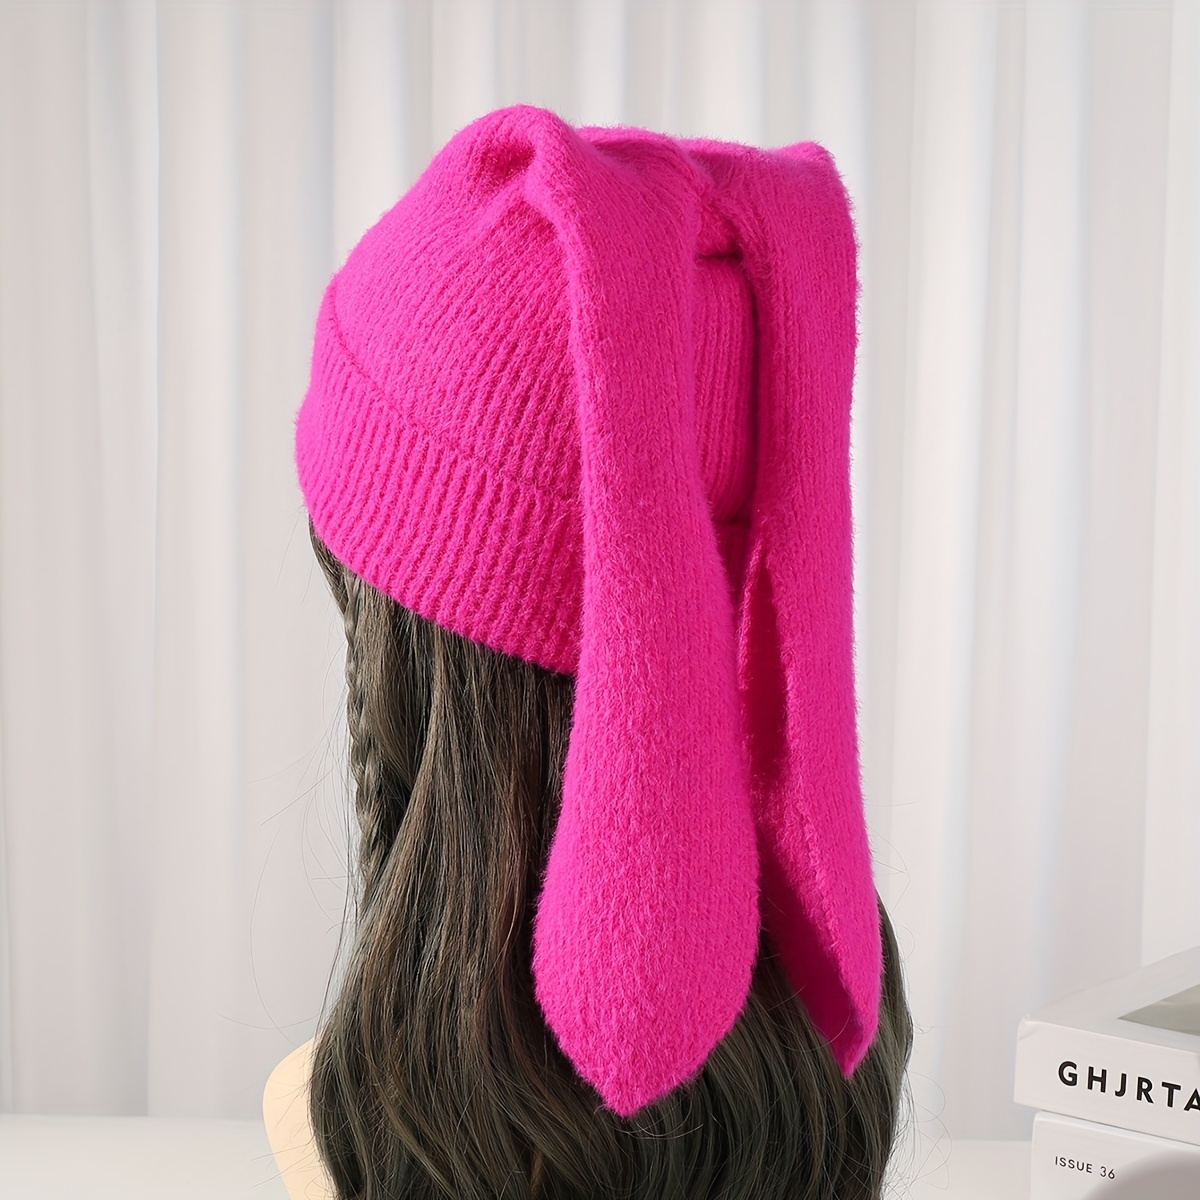 Knit Beanie Hats for Women Bunny Winter Cap Faux Fur Warm Knit Rabbit Crochet Skull Cap Ski Outdoor Slouchy Hat